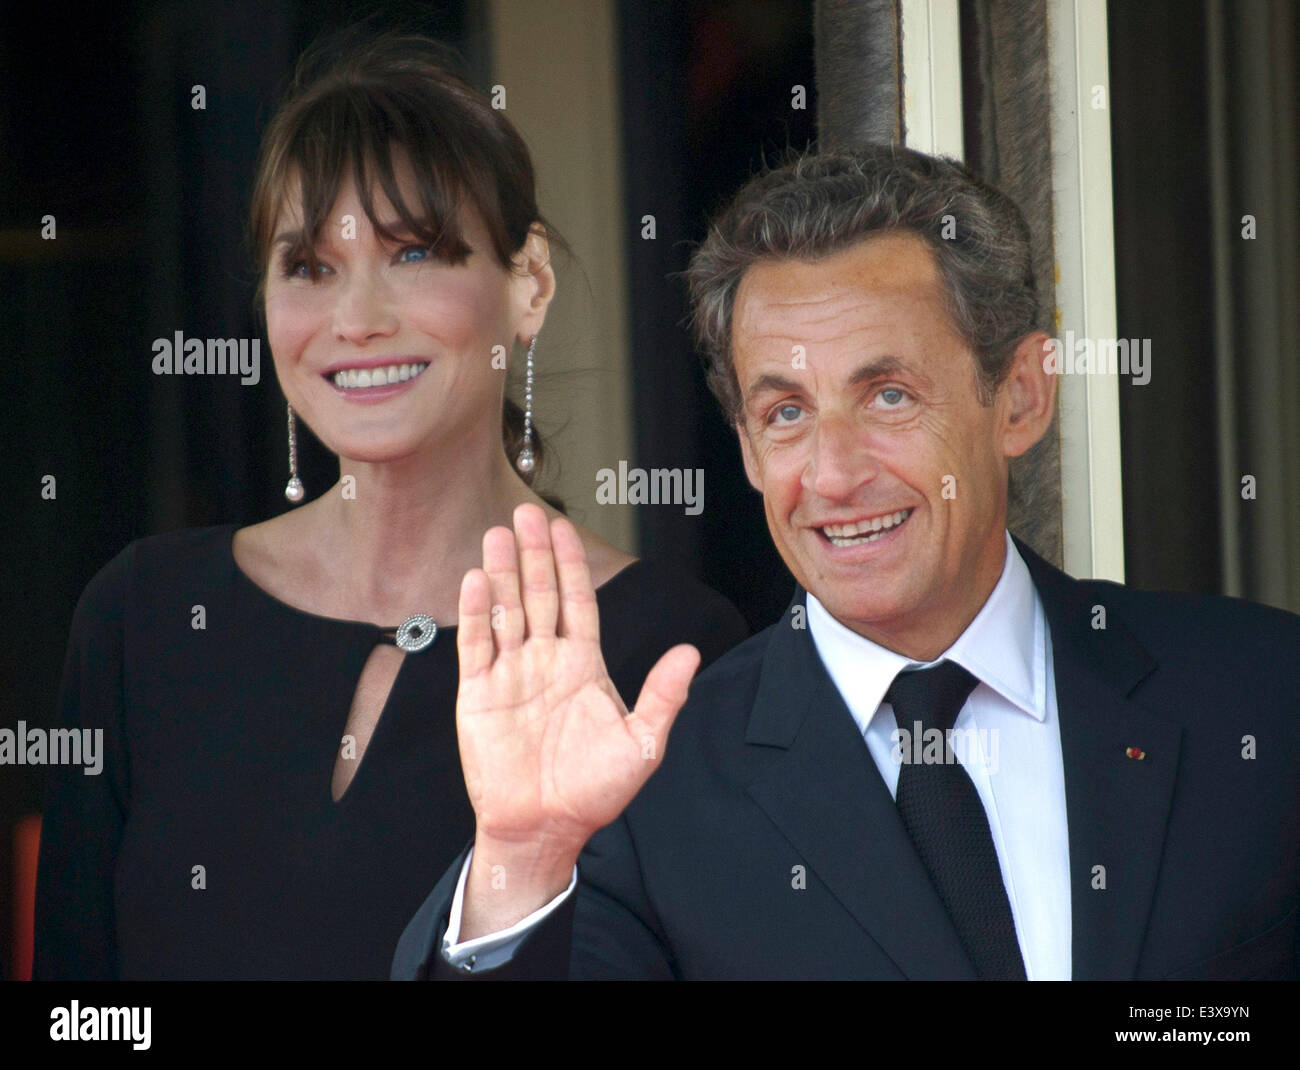 Der französische Präsident Nicolas Sarkozy und seine Frau Carla Bruni-Sarkozy warten am Donnerstag (26.05.2011) a Deauville auf die Gäste zum Abendessen. In dem französischen Seebad am Ärmelkanal findet am 26. und 27. Mai der diesjährige G8-Gipfel statt. Foto: Peer Grimm dpa Foto Stock